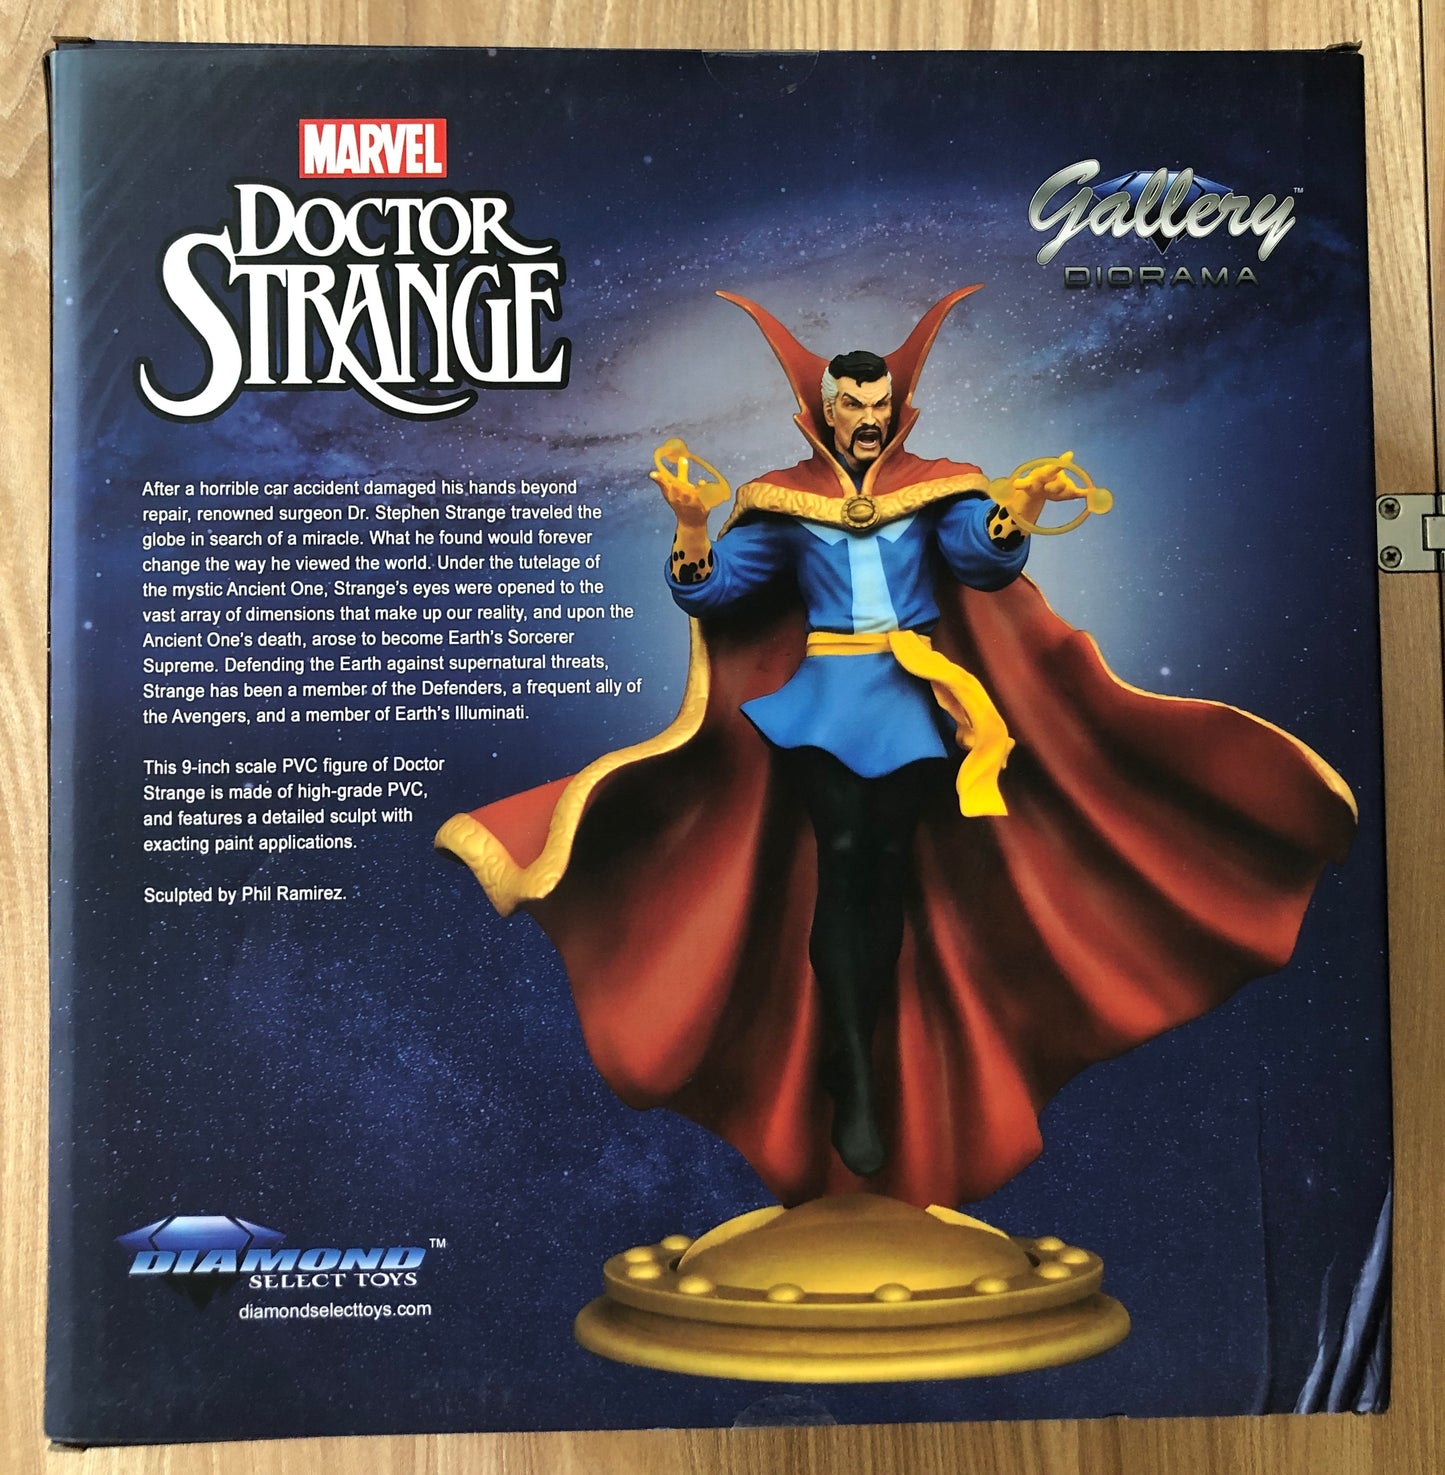 MARVEL - Statue de Doctor Strange - PVC 23 cm - Marvel Gallery